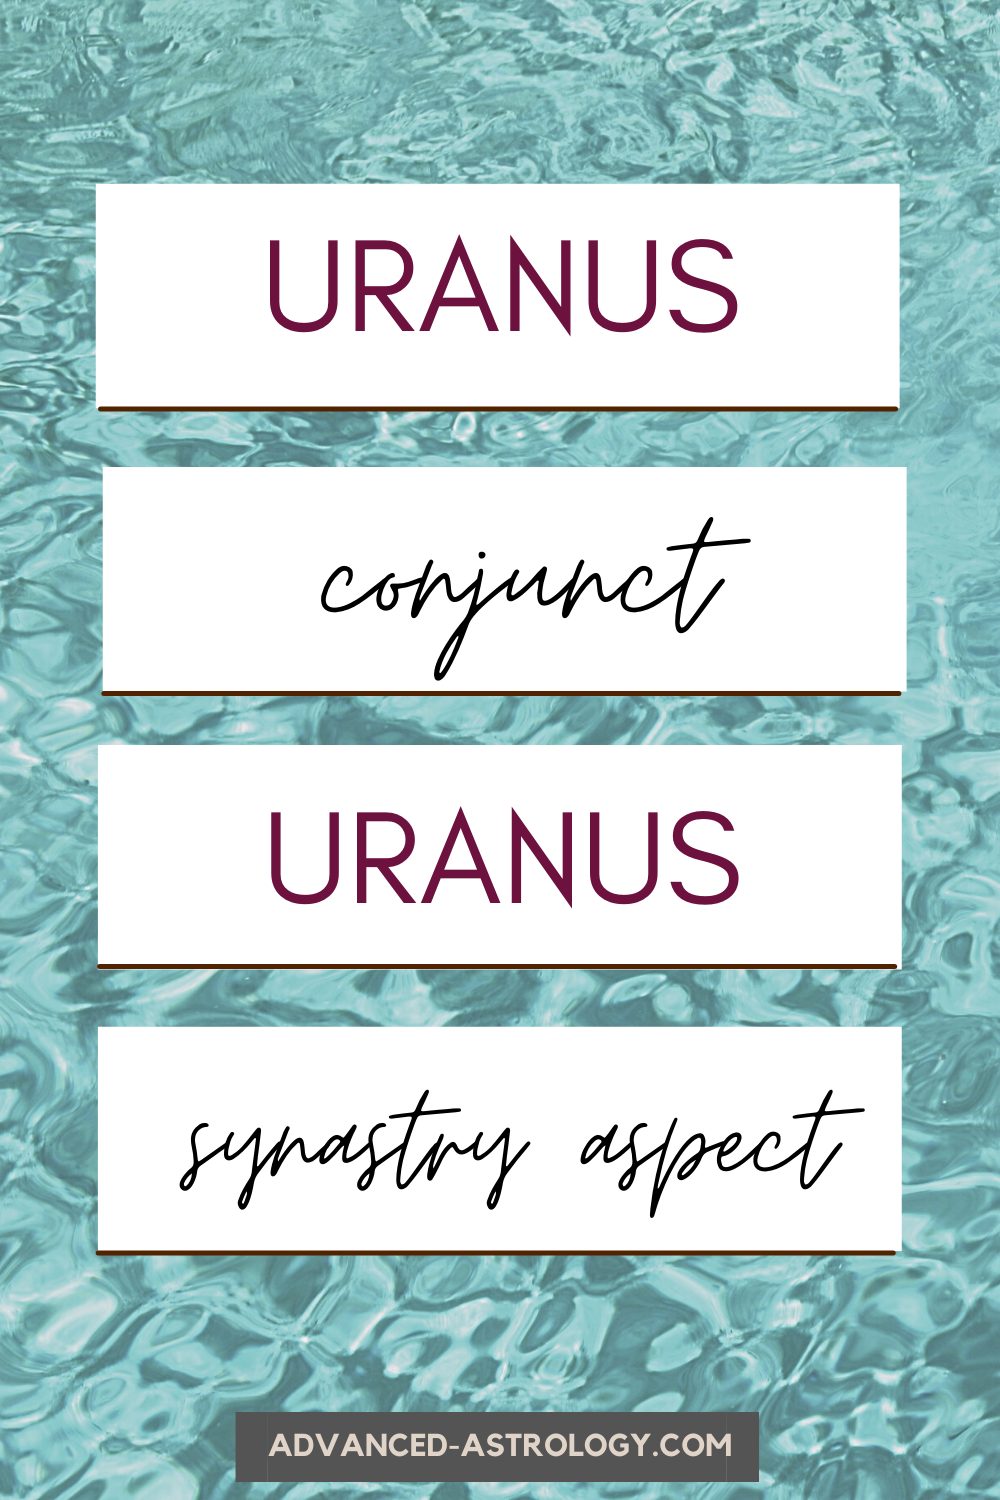 Uranus Conjunct Uranus Synastry Aspect in Astrology Astrology